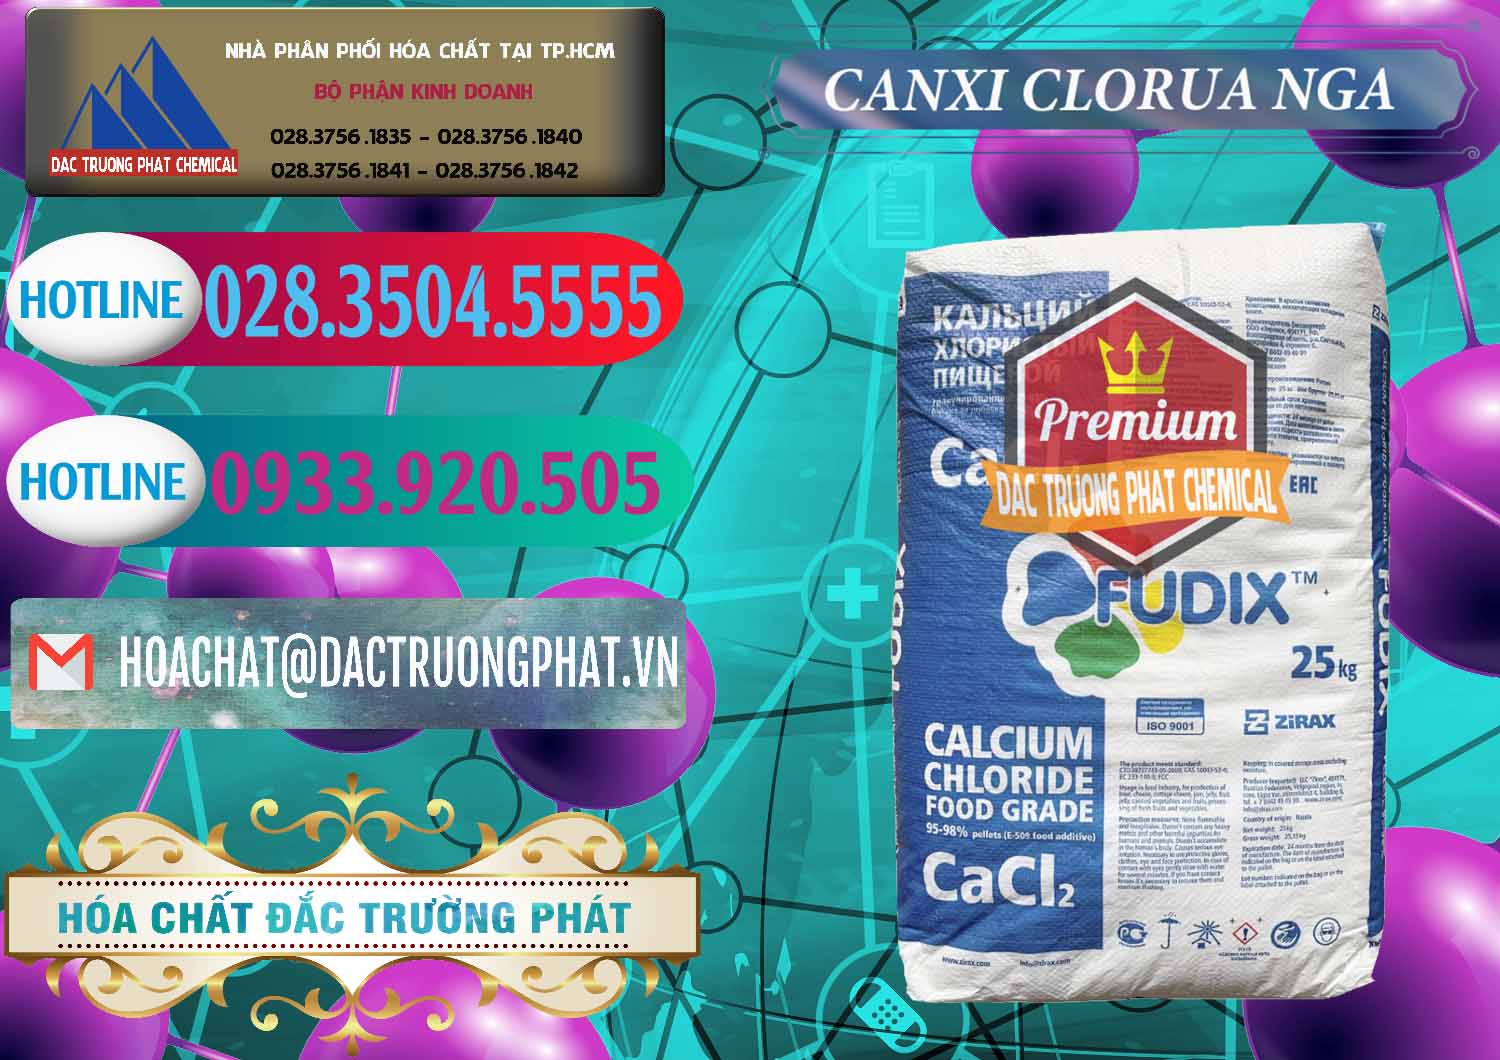 Cty bán _ phân phối CaCl2 – Canxi Clorua Nga Russia - 0430 - Nhà nhập khẩu ( phân phối ) hóa chất tại TP.HCM - truongphat.vn